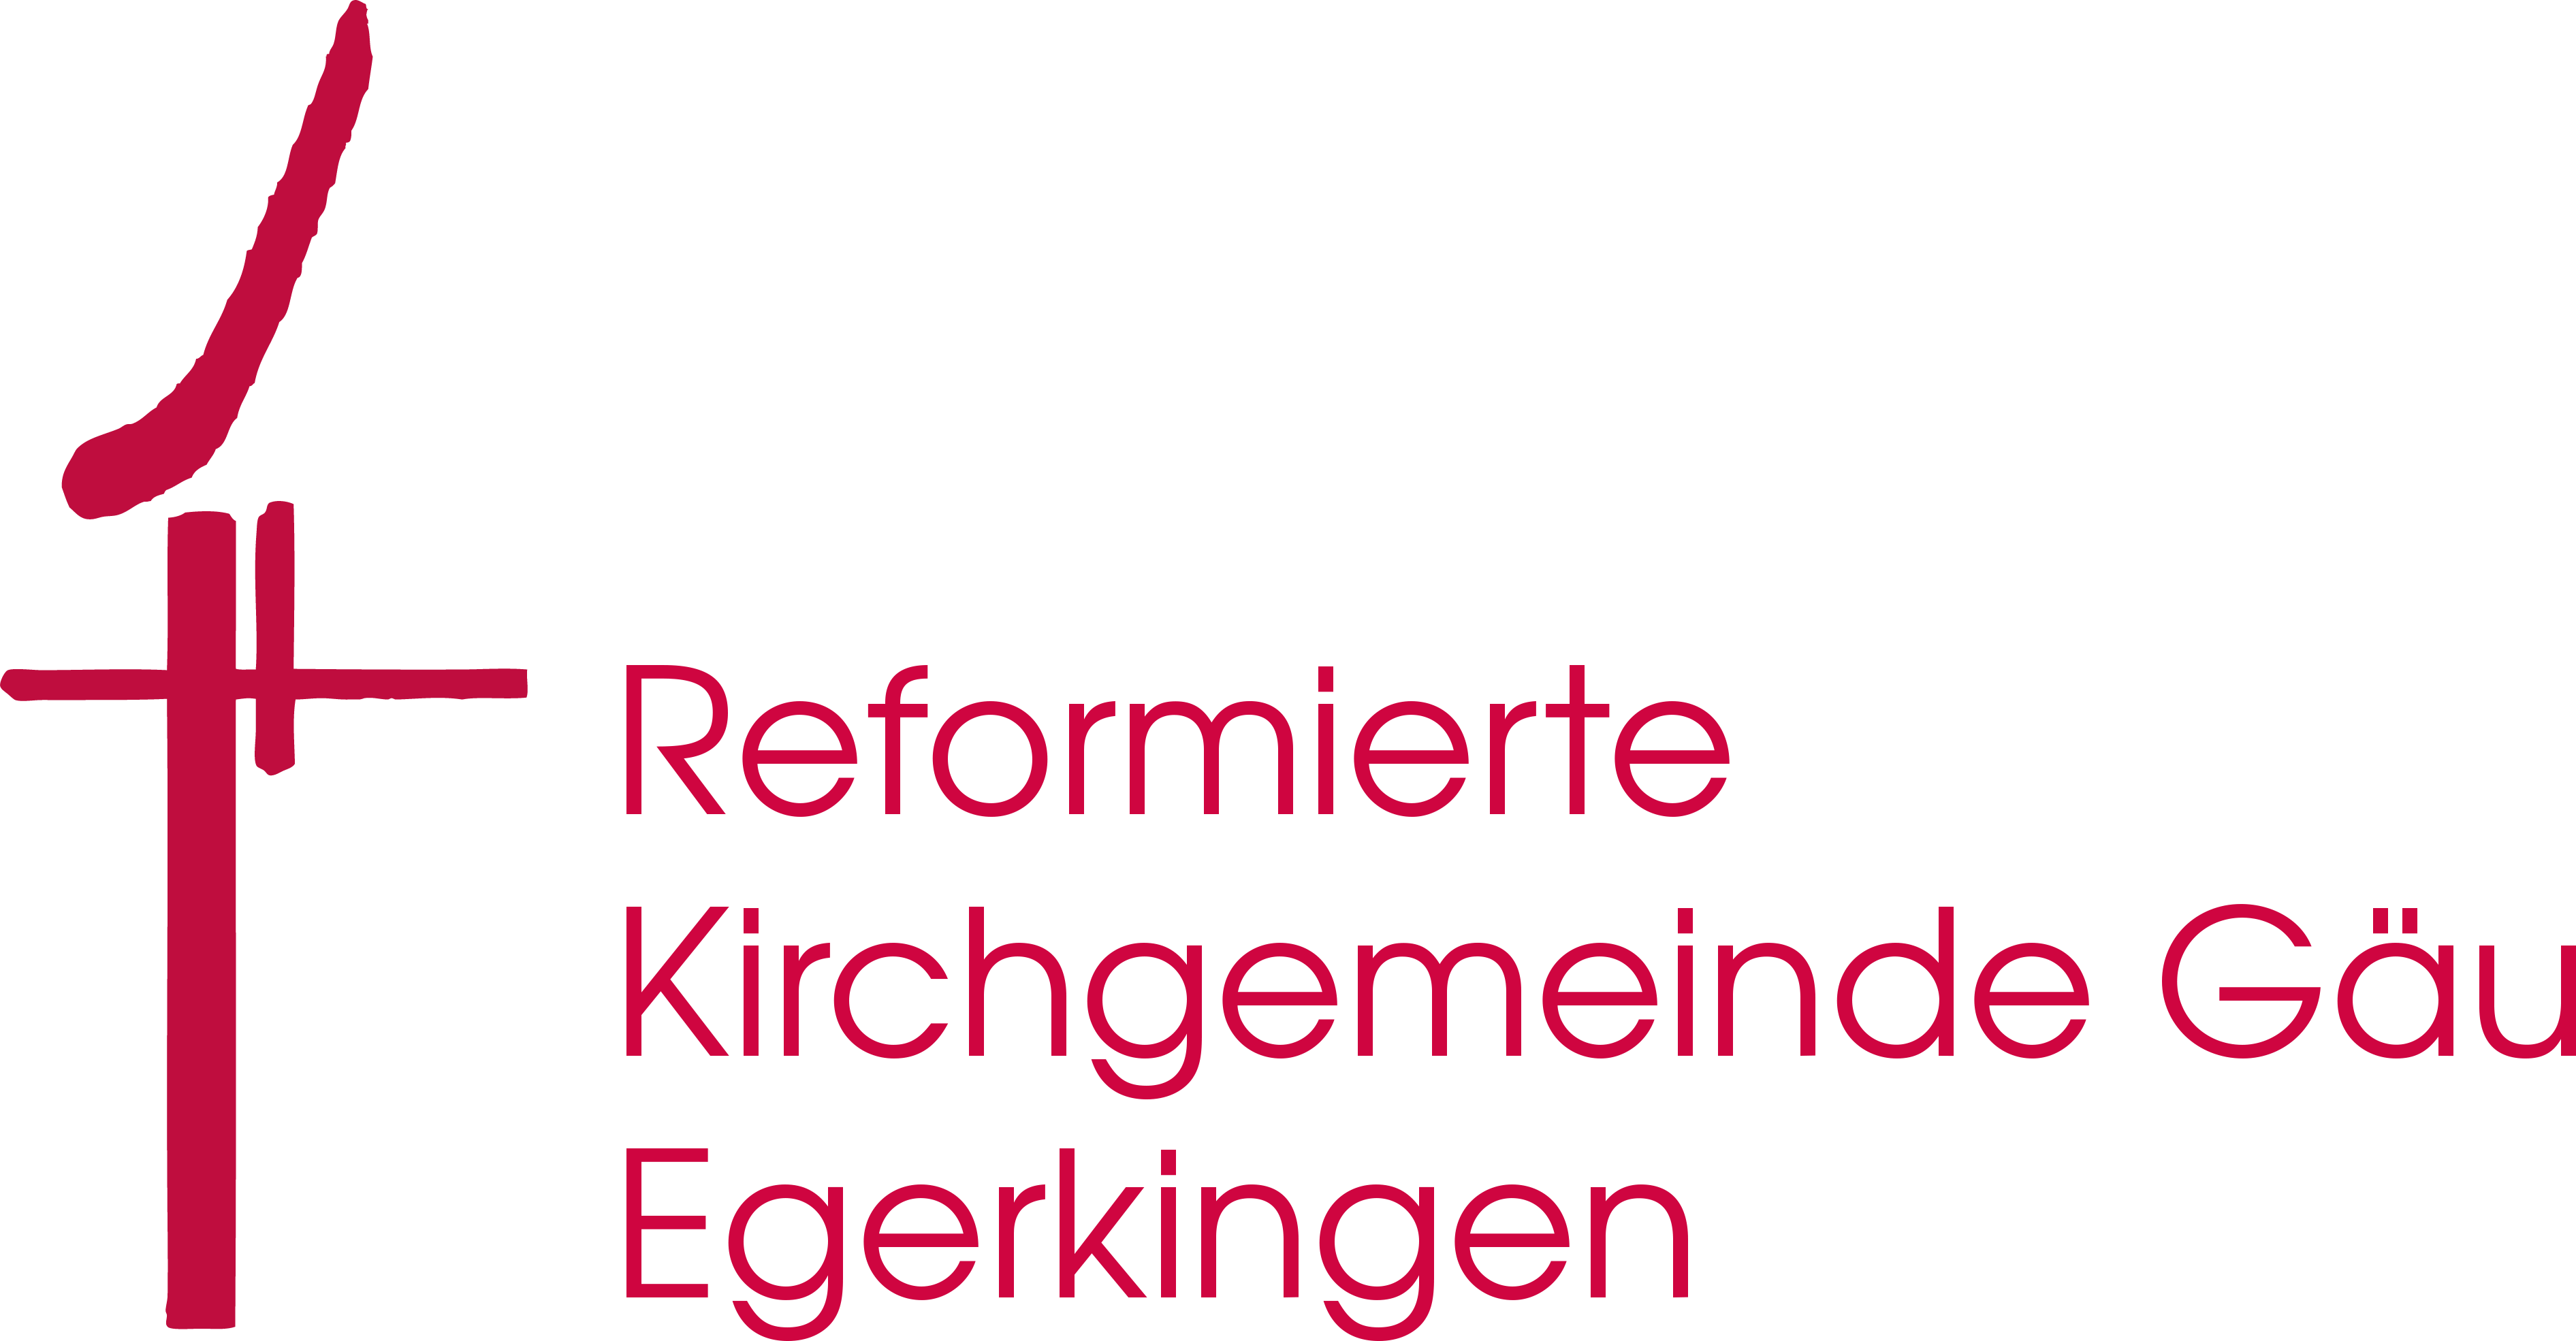 Reformierte Kirchgemeinde Gäu